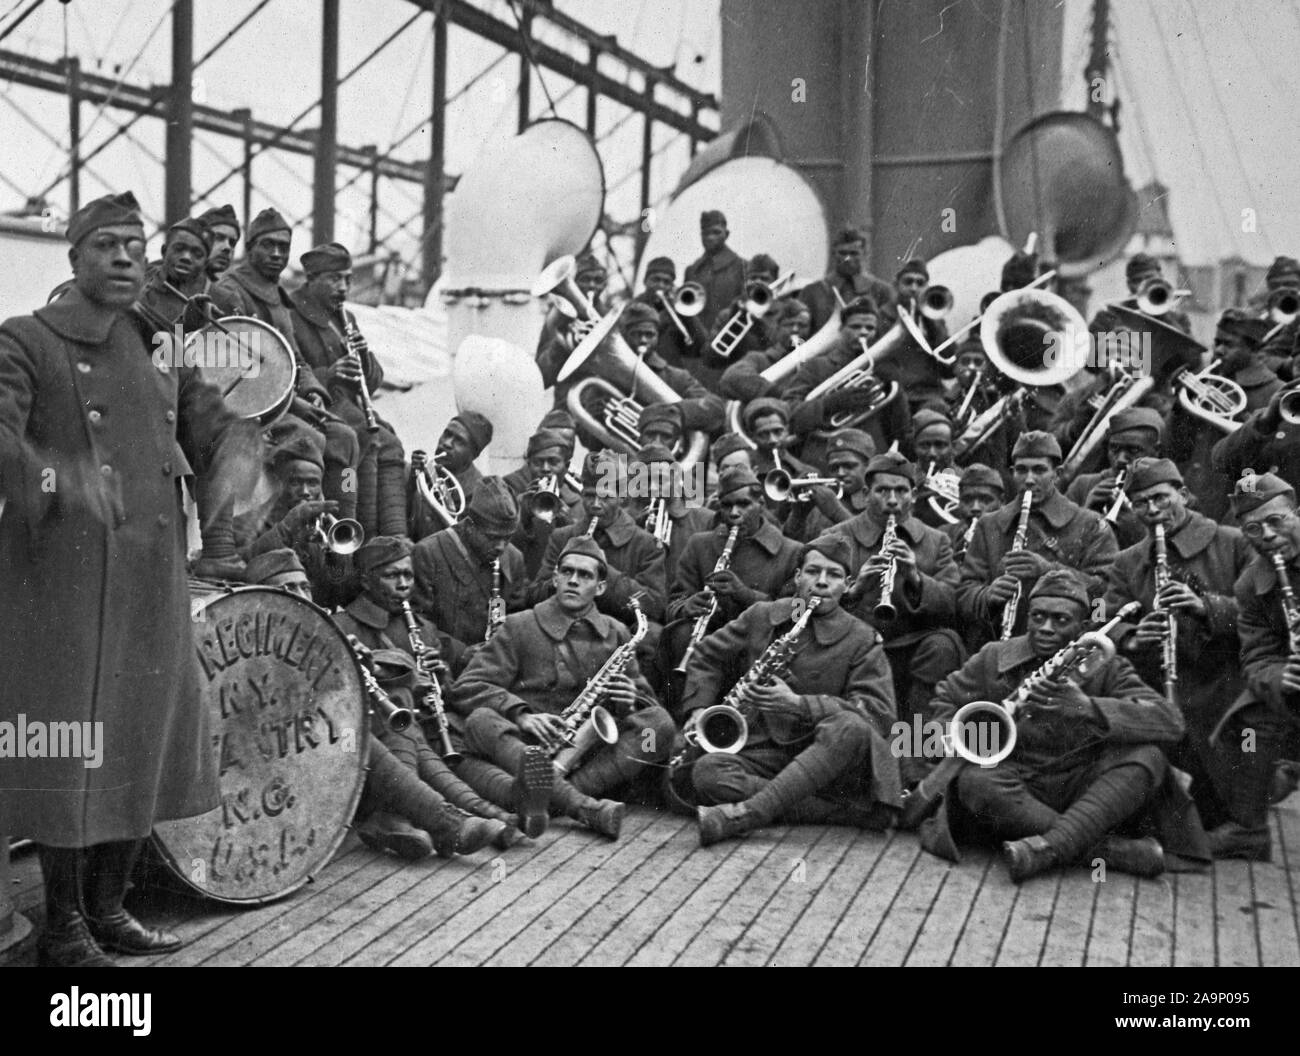 WW ich Fotos - Farbig/Afrikanische amerikanische Truppen - 2/12/1919 - Farbige Jazz Band und Leader zurück mit farbigen 15 New York. Leutnant James Reese Europe, die für vier Jahre war New York. Liebling der Gesellschaft Orchester (Tanz-) Führer, früher mit Vernon schloss, kehrte mit seinem Regiment Infanterie, die 369. Stockfoto